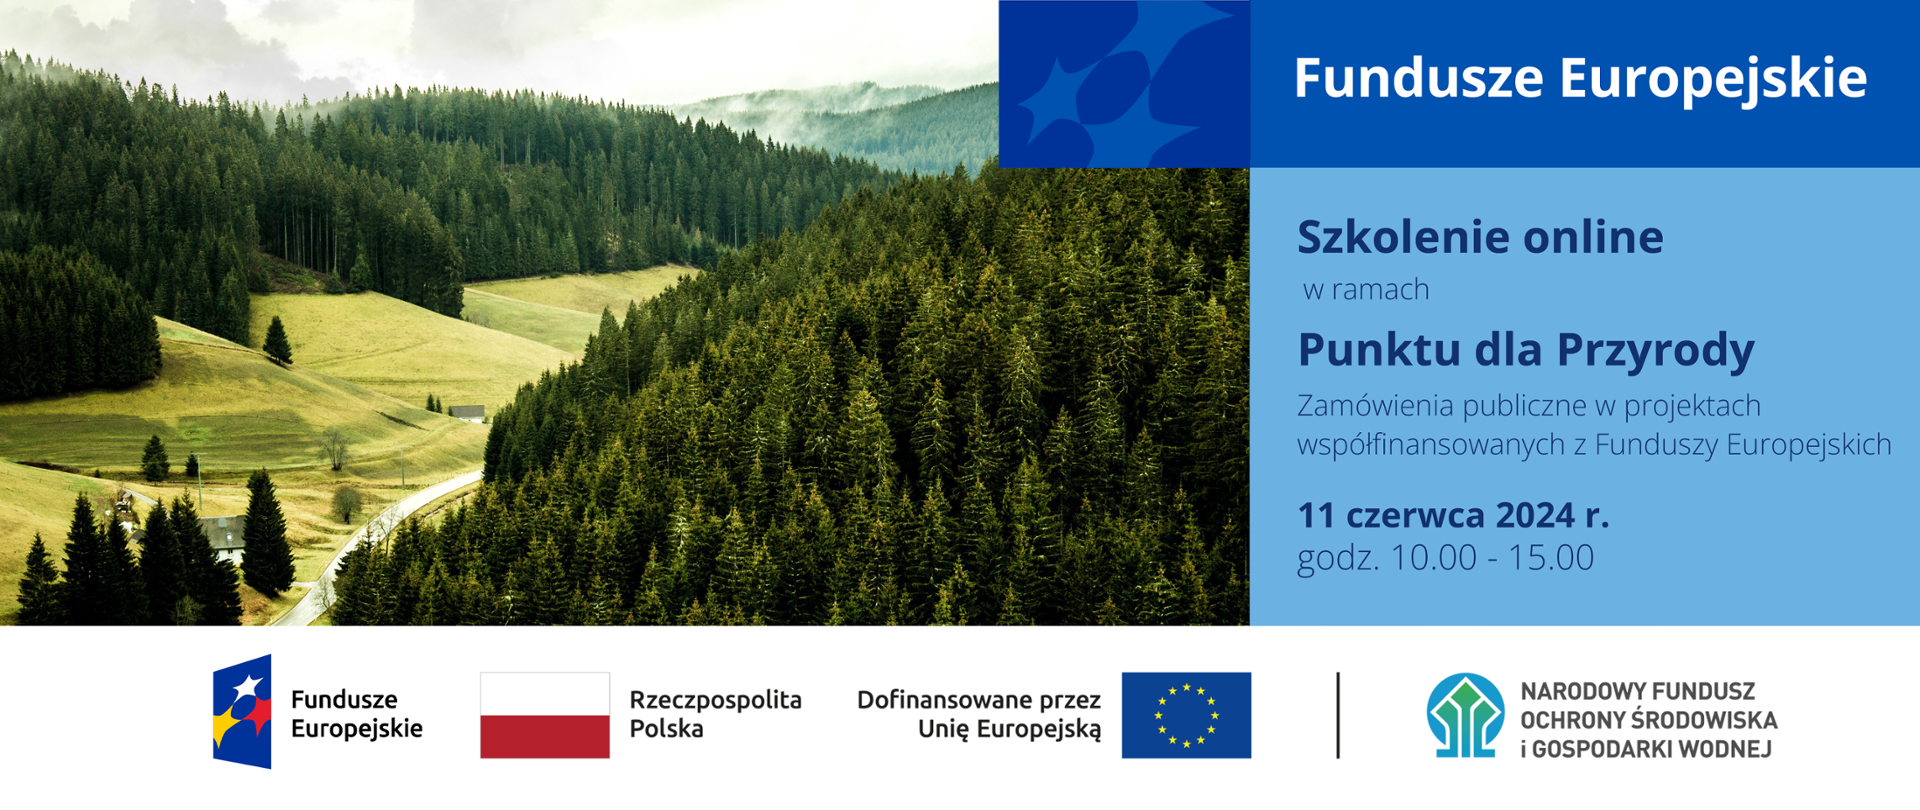 Po lewej stronie zdjęcie lasu, po prawej napis: "Fundusze Europejskie. Szkolenie online w ramach Punktu dla Przyrody. Zamówienia publiczne w projektach współfinansowanych z Funduszy Europejskich. 11 czerwca 2024 r. godz. 10.00 - 15.00", na dole ciąg znaków: FE, RP, UE i NFOŚIGW.